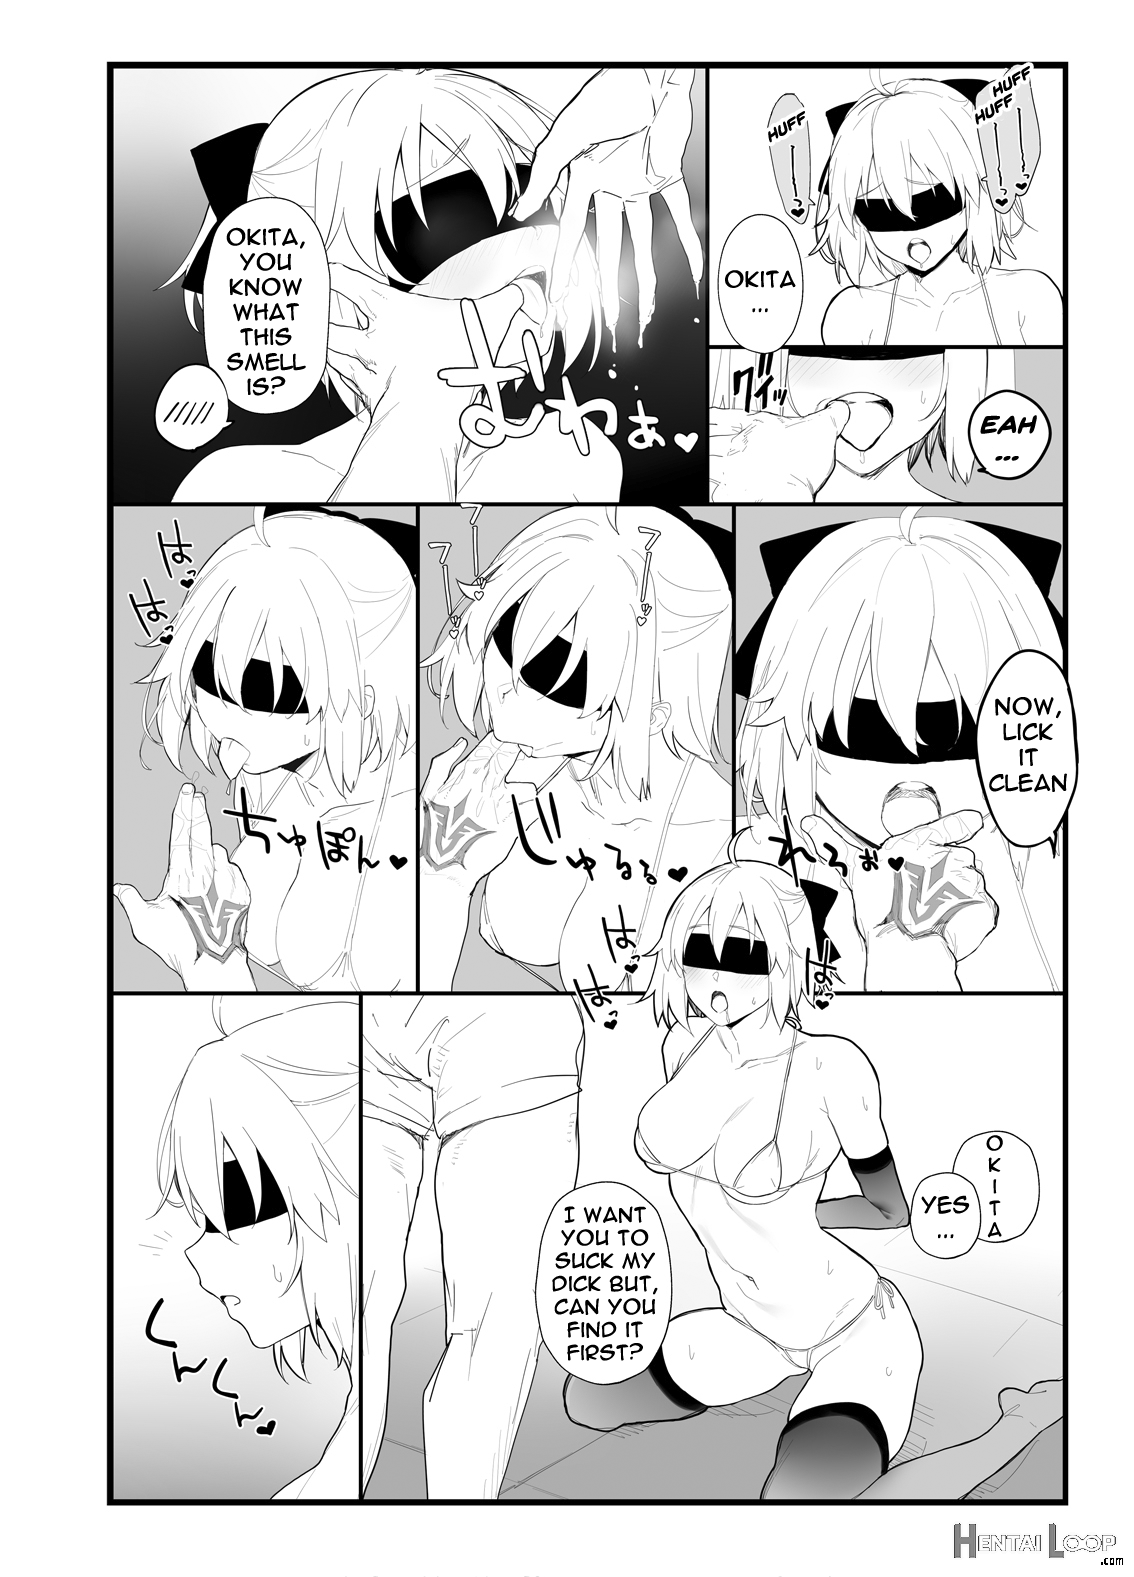 Okita-san's Book page 15